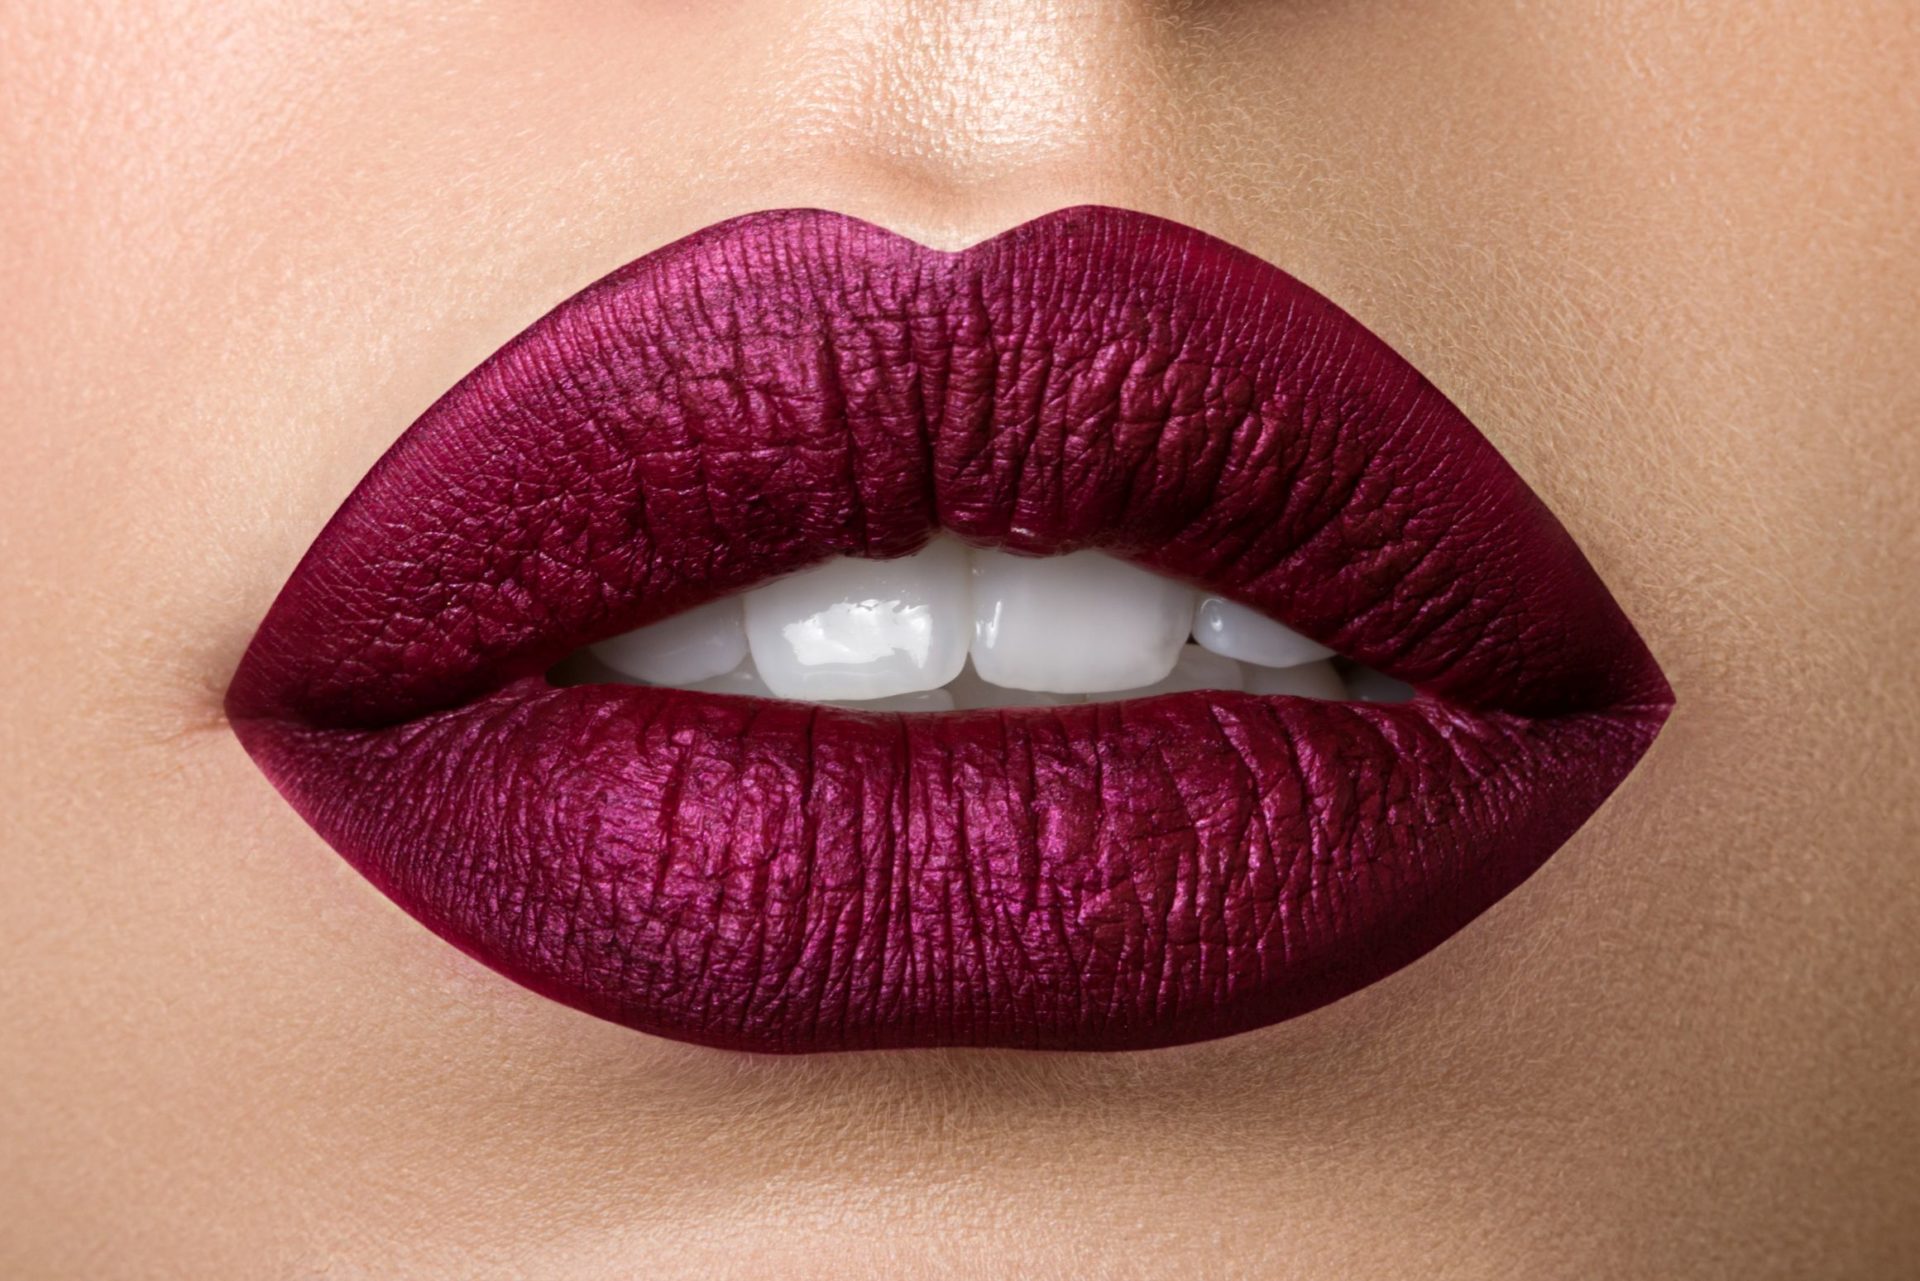 Close up view of beautiful woman lips with purple matt lipstick